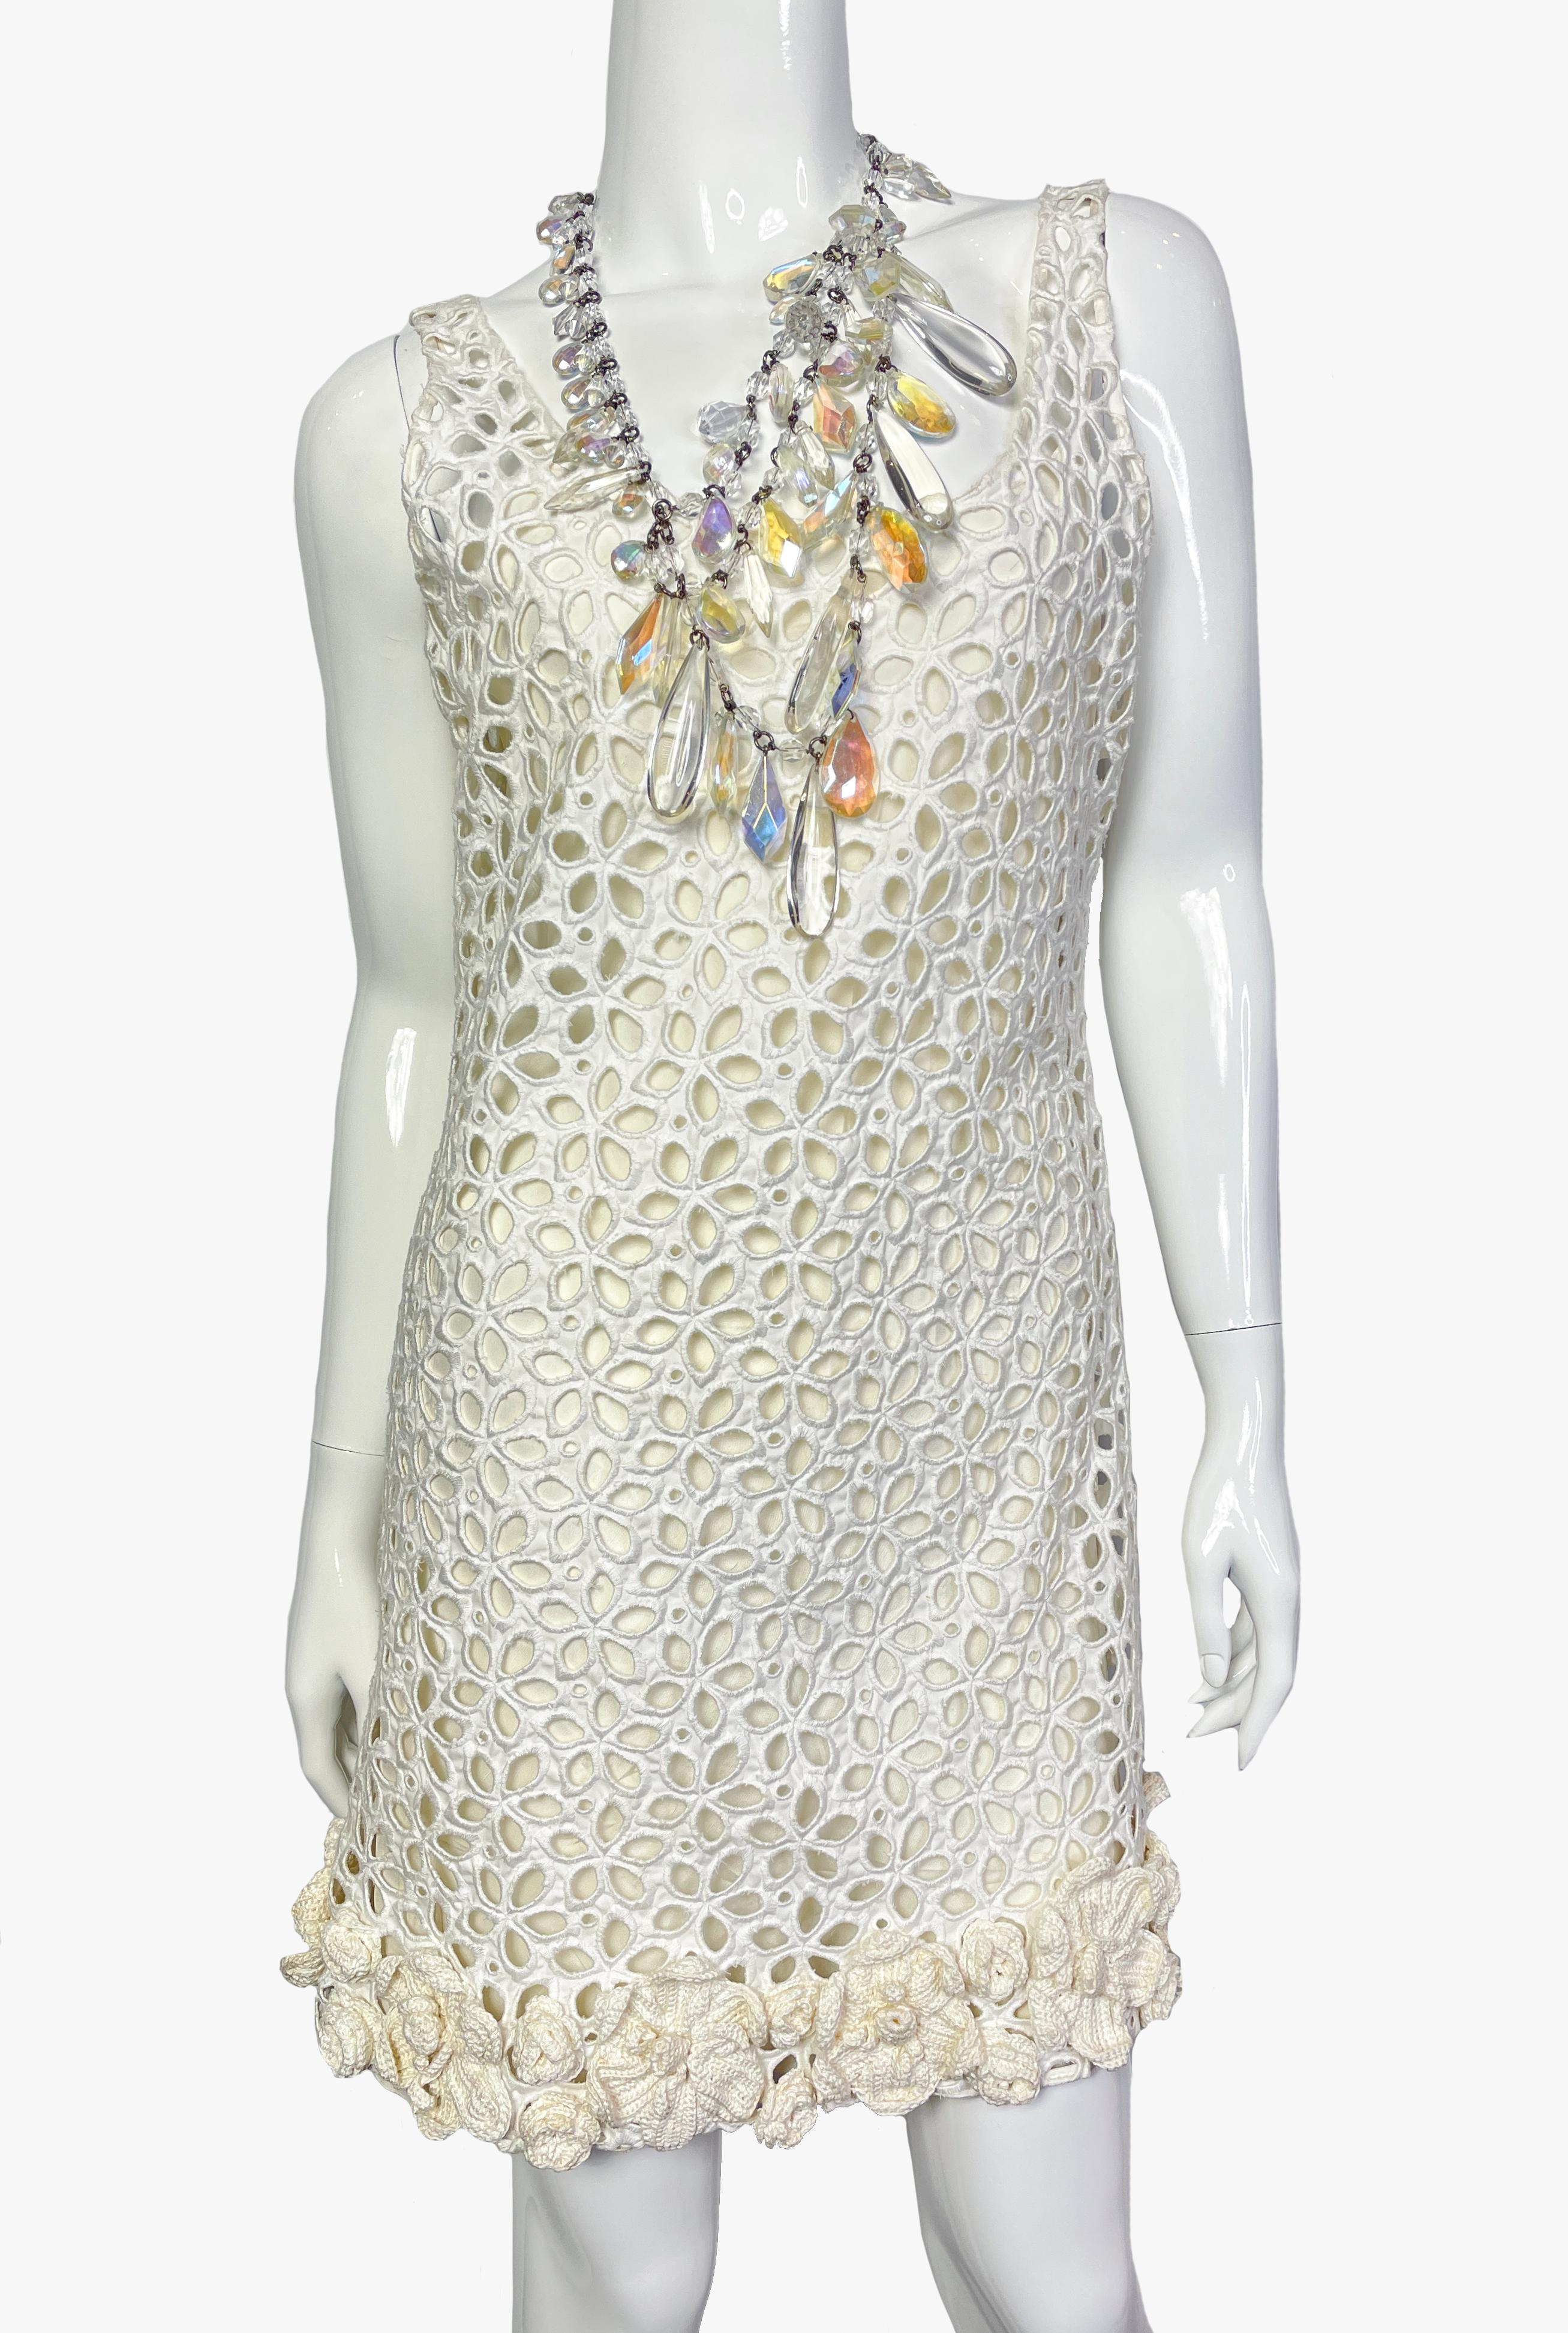 Rare robe en crochet blanc cassé à motifs floraux de Prada. Elle se compose de deux couches : la couche inférieure est en soie fine, la couche supérieure est à motifs floraux décorés au crochet le long de l'ourlet.
Décoré d'un collier multibrins en